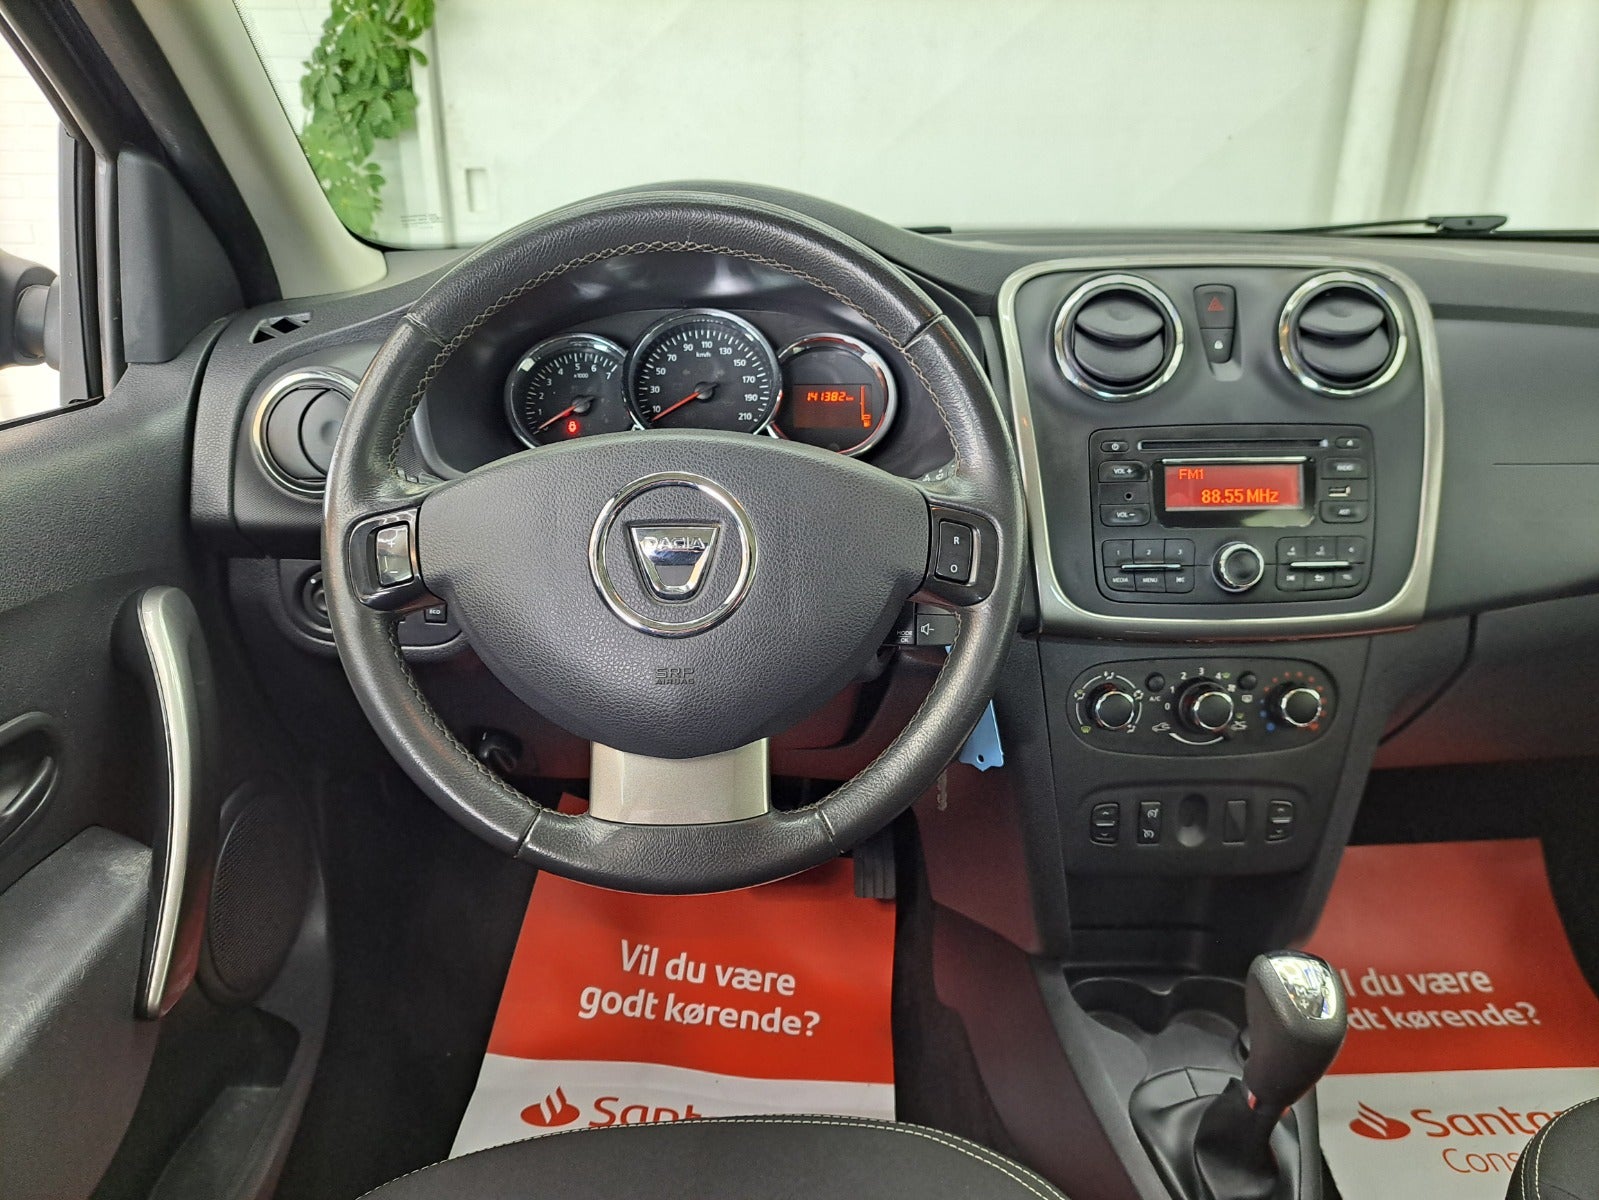 Dacia Logan 2016